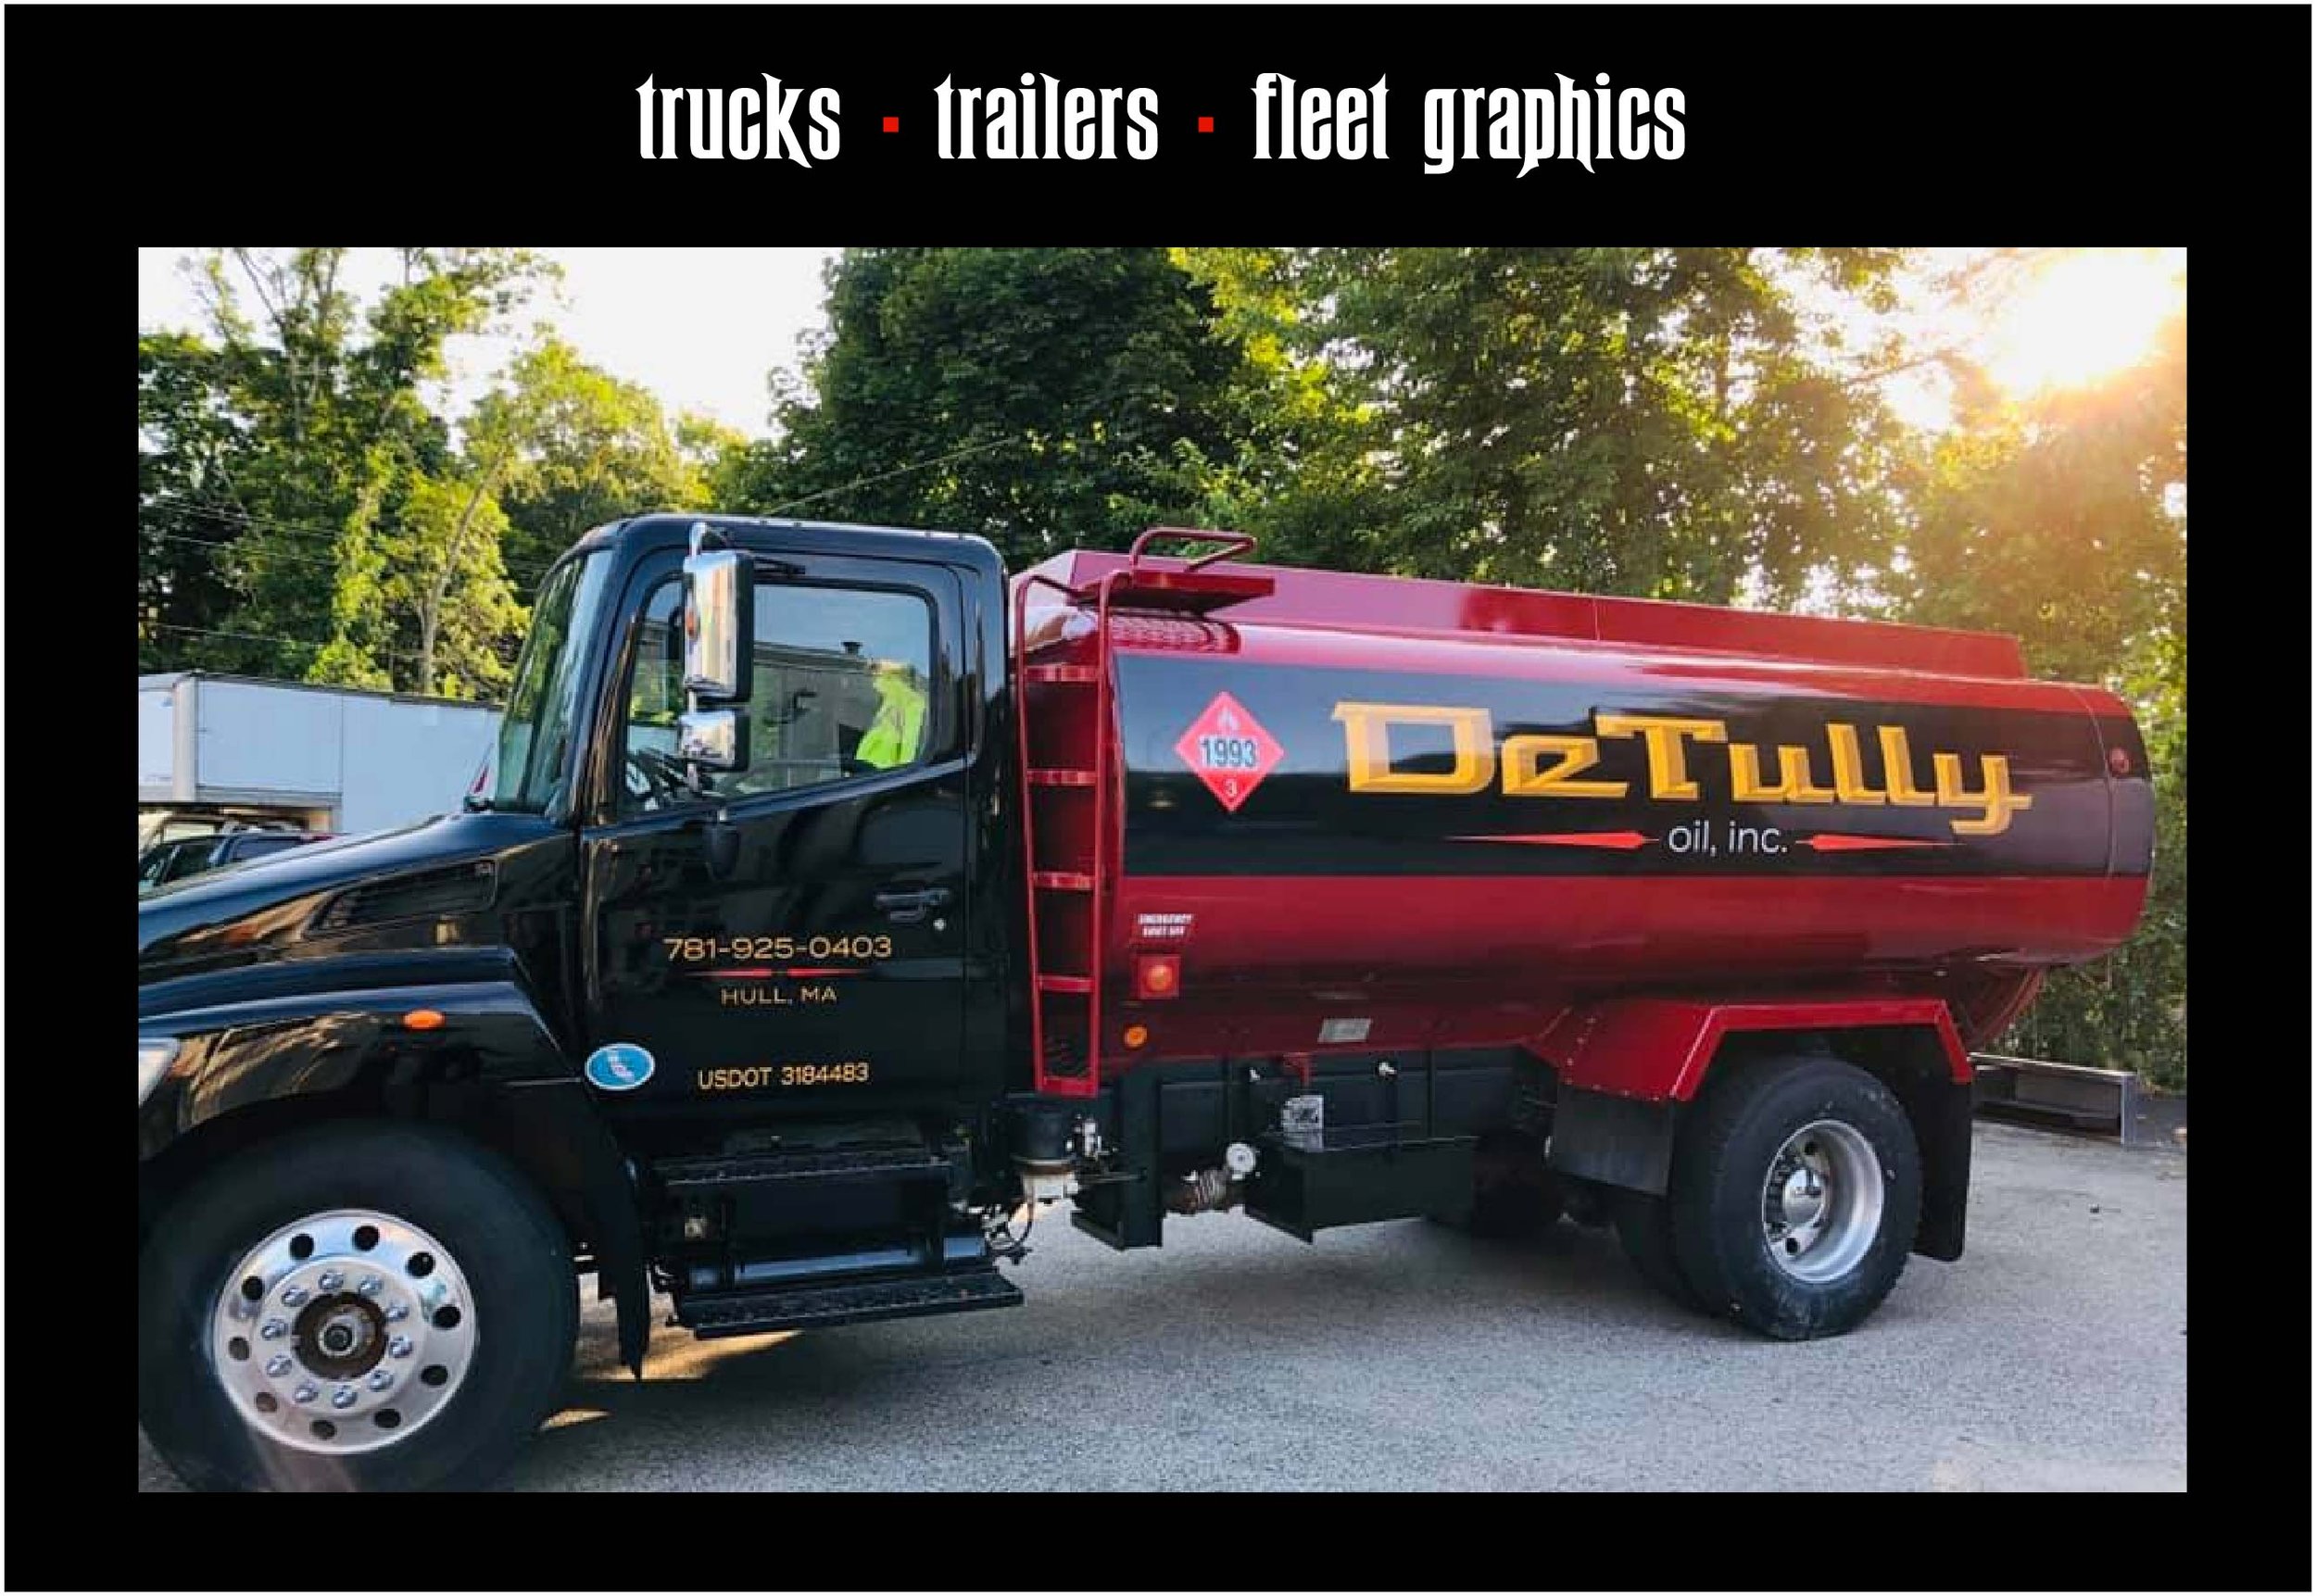 Trucks trailers fleet.jpg